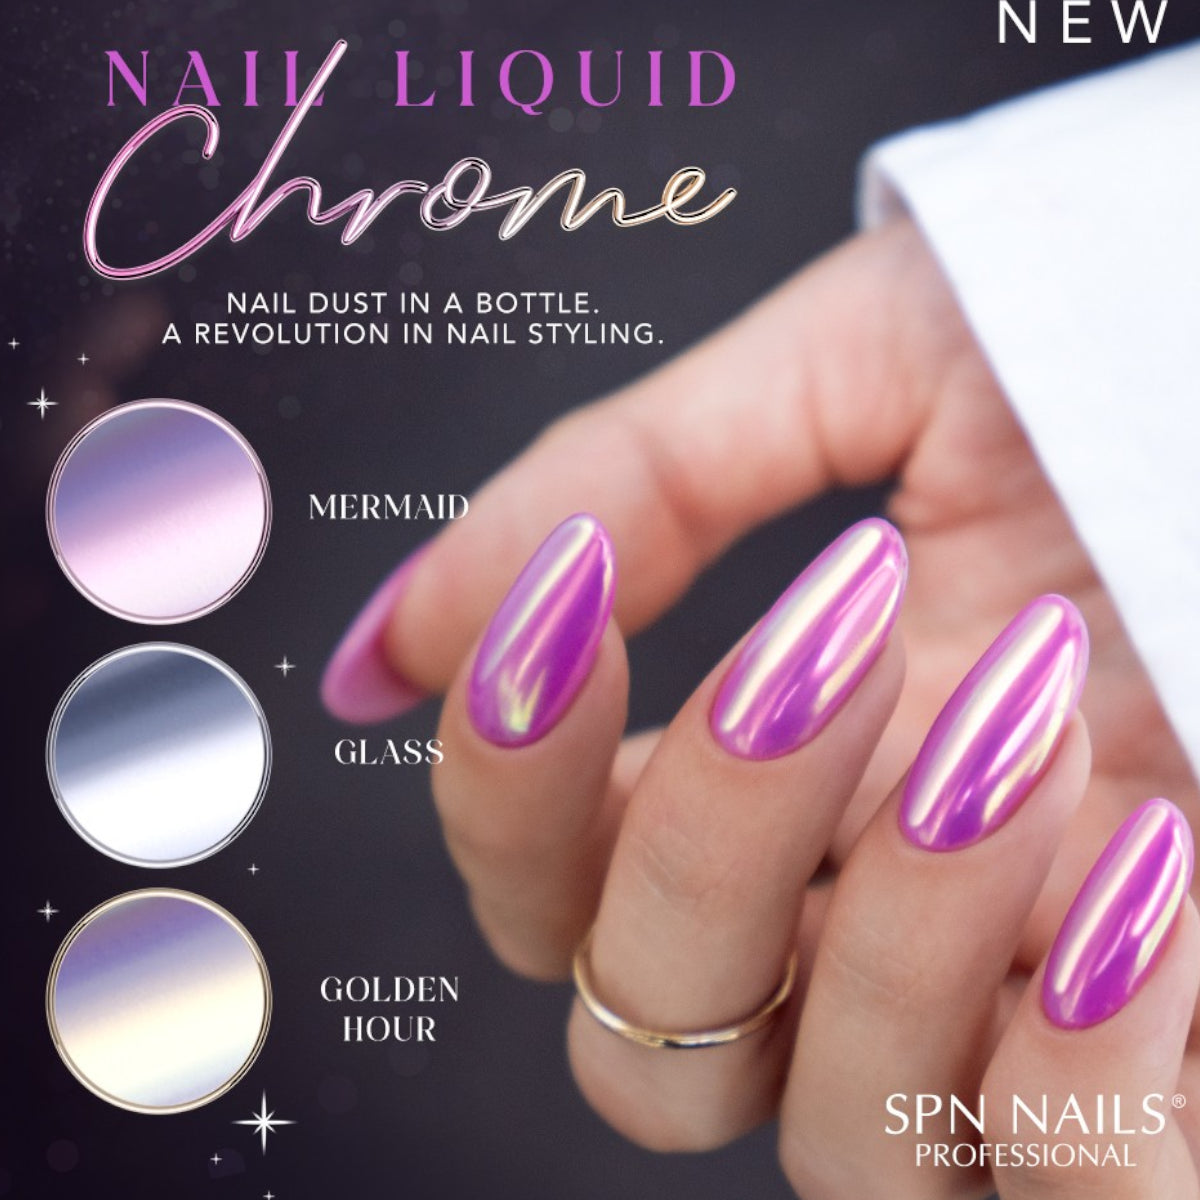 SPN Nails Nail Liquid Chrome Mermaid Nail Dust Info